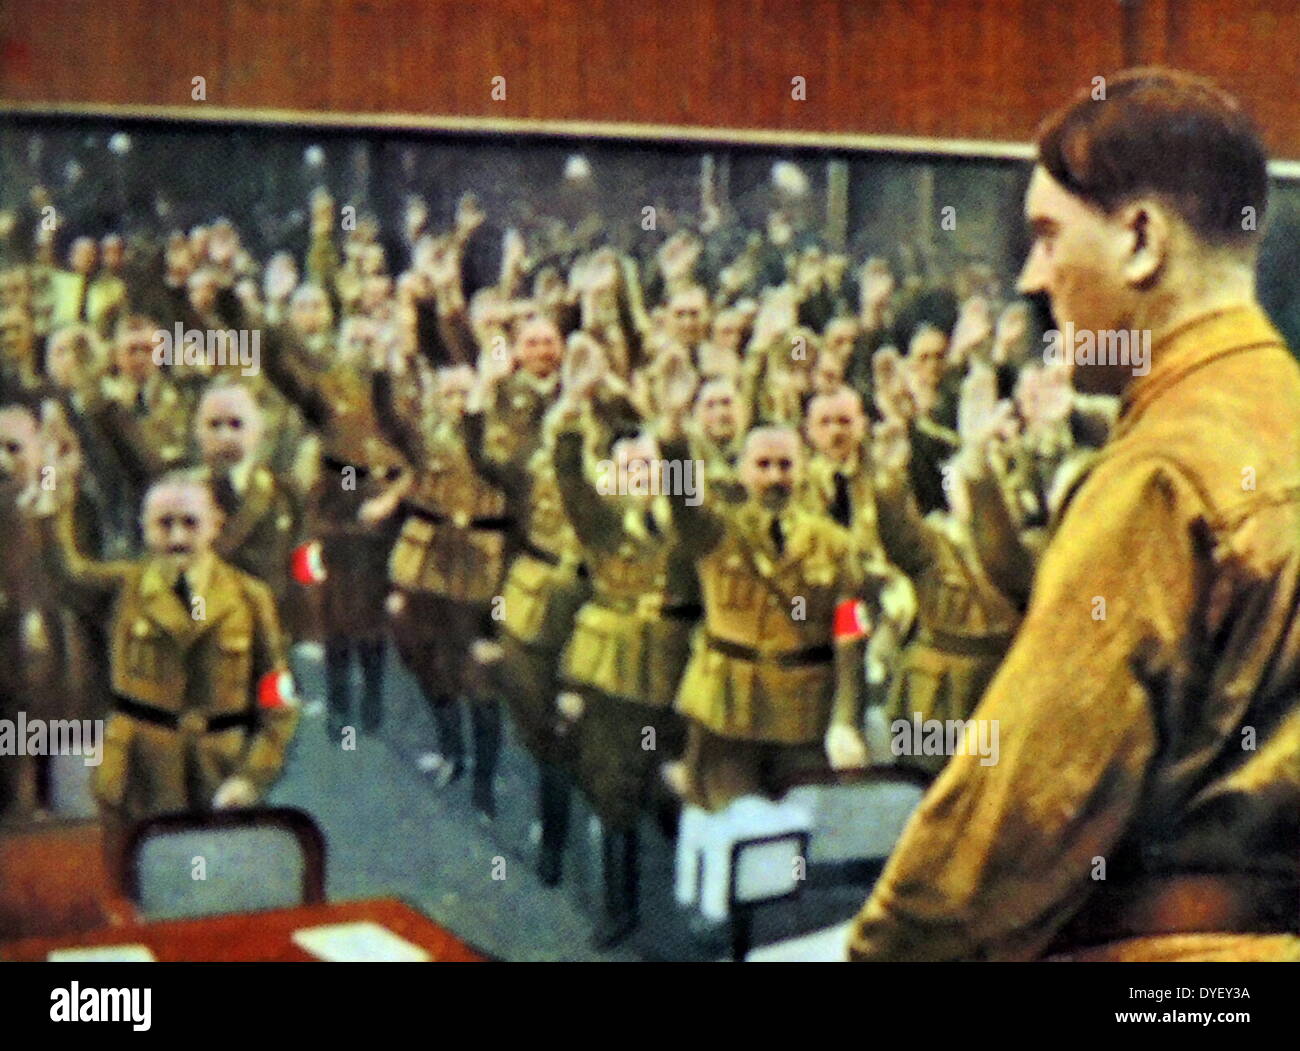 Adressage d'Adolf Hitler le Reichstag ou Parlement allemand circa 1933-1934 Banque D'Images